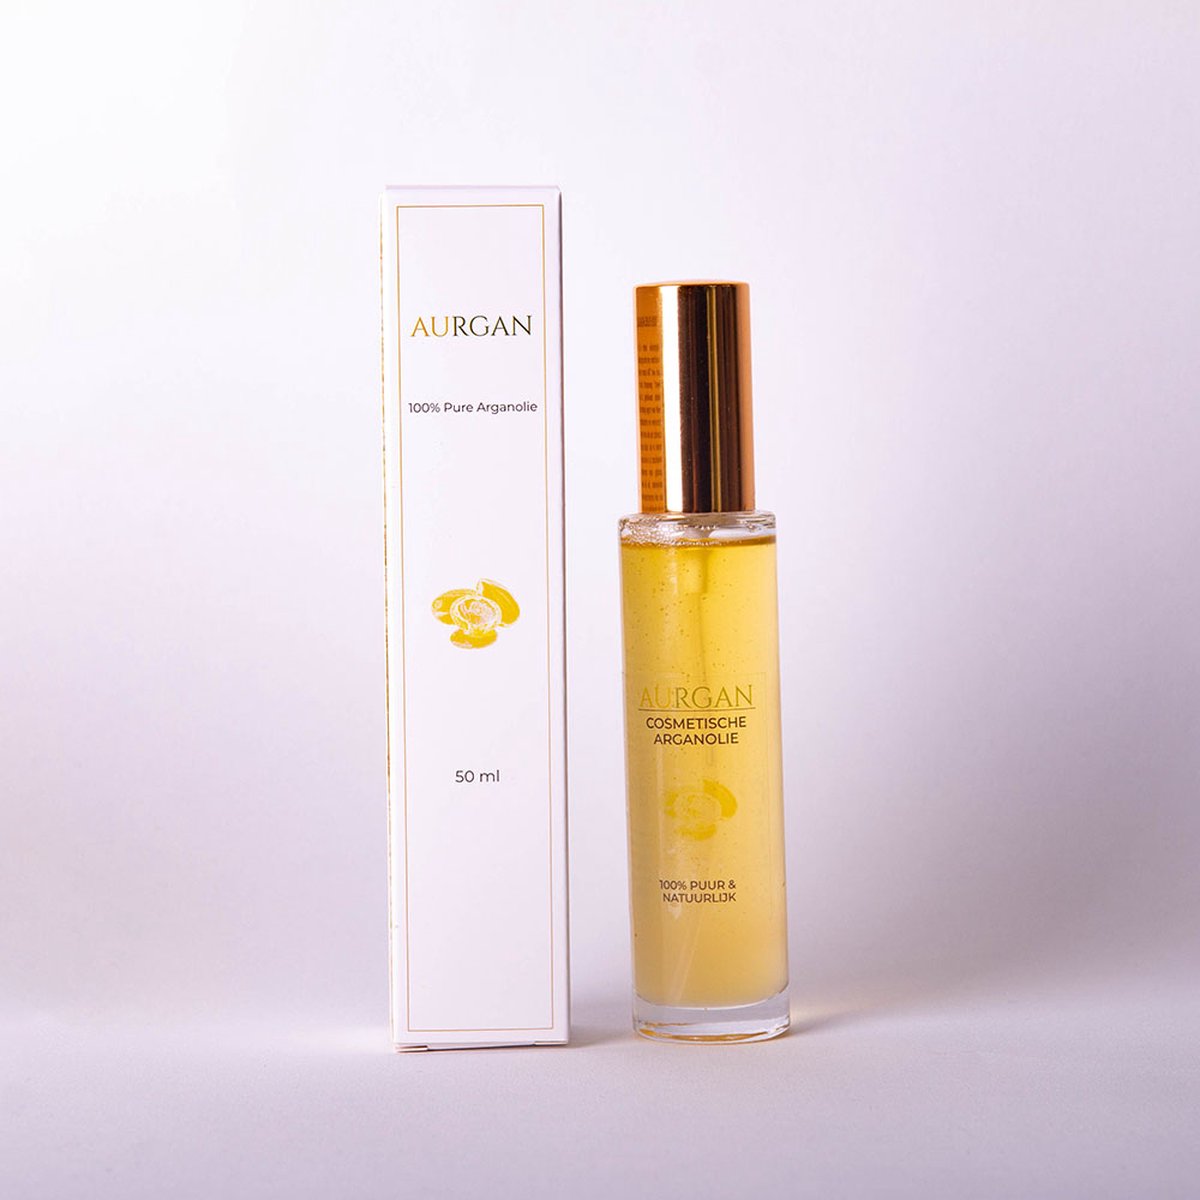 Aurgan - 100% pure arganolie koudgeperst Premium kwaliteit - Cosmetisch - 50 ml